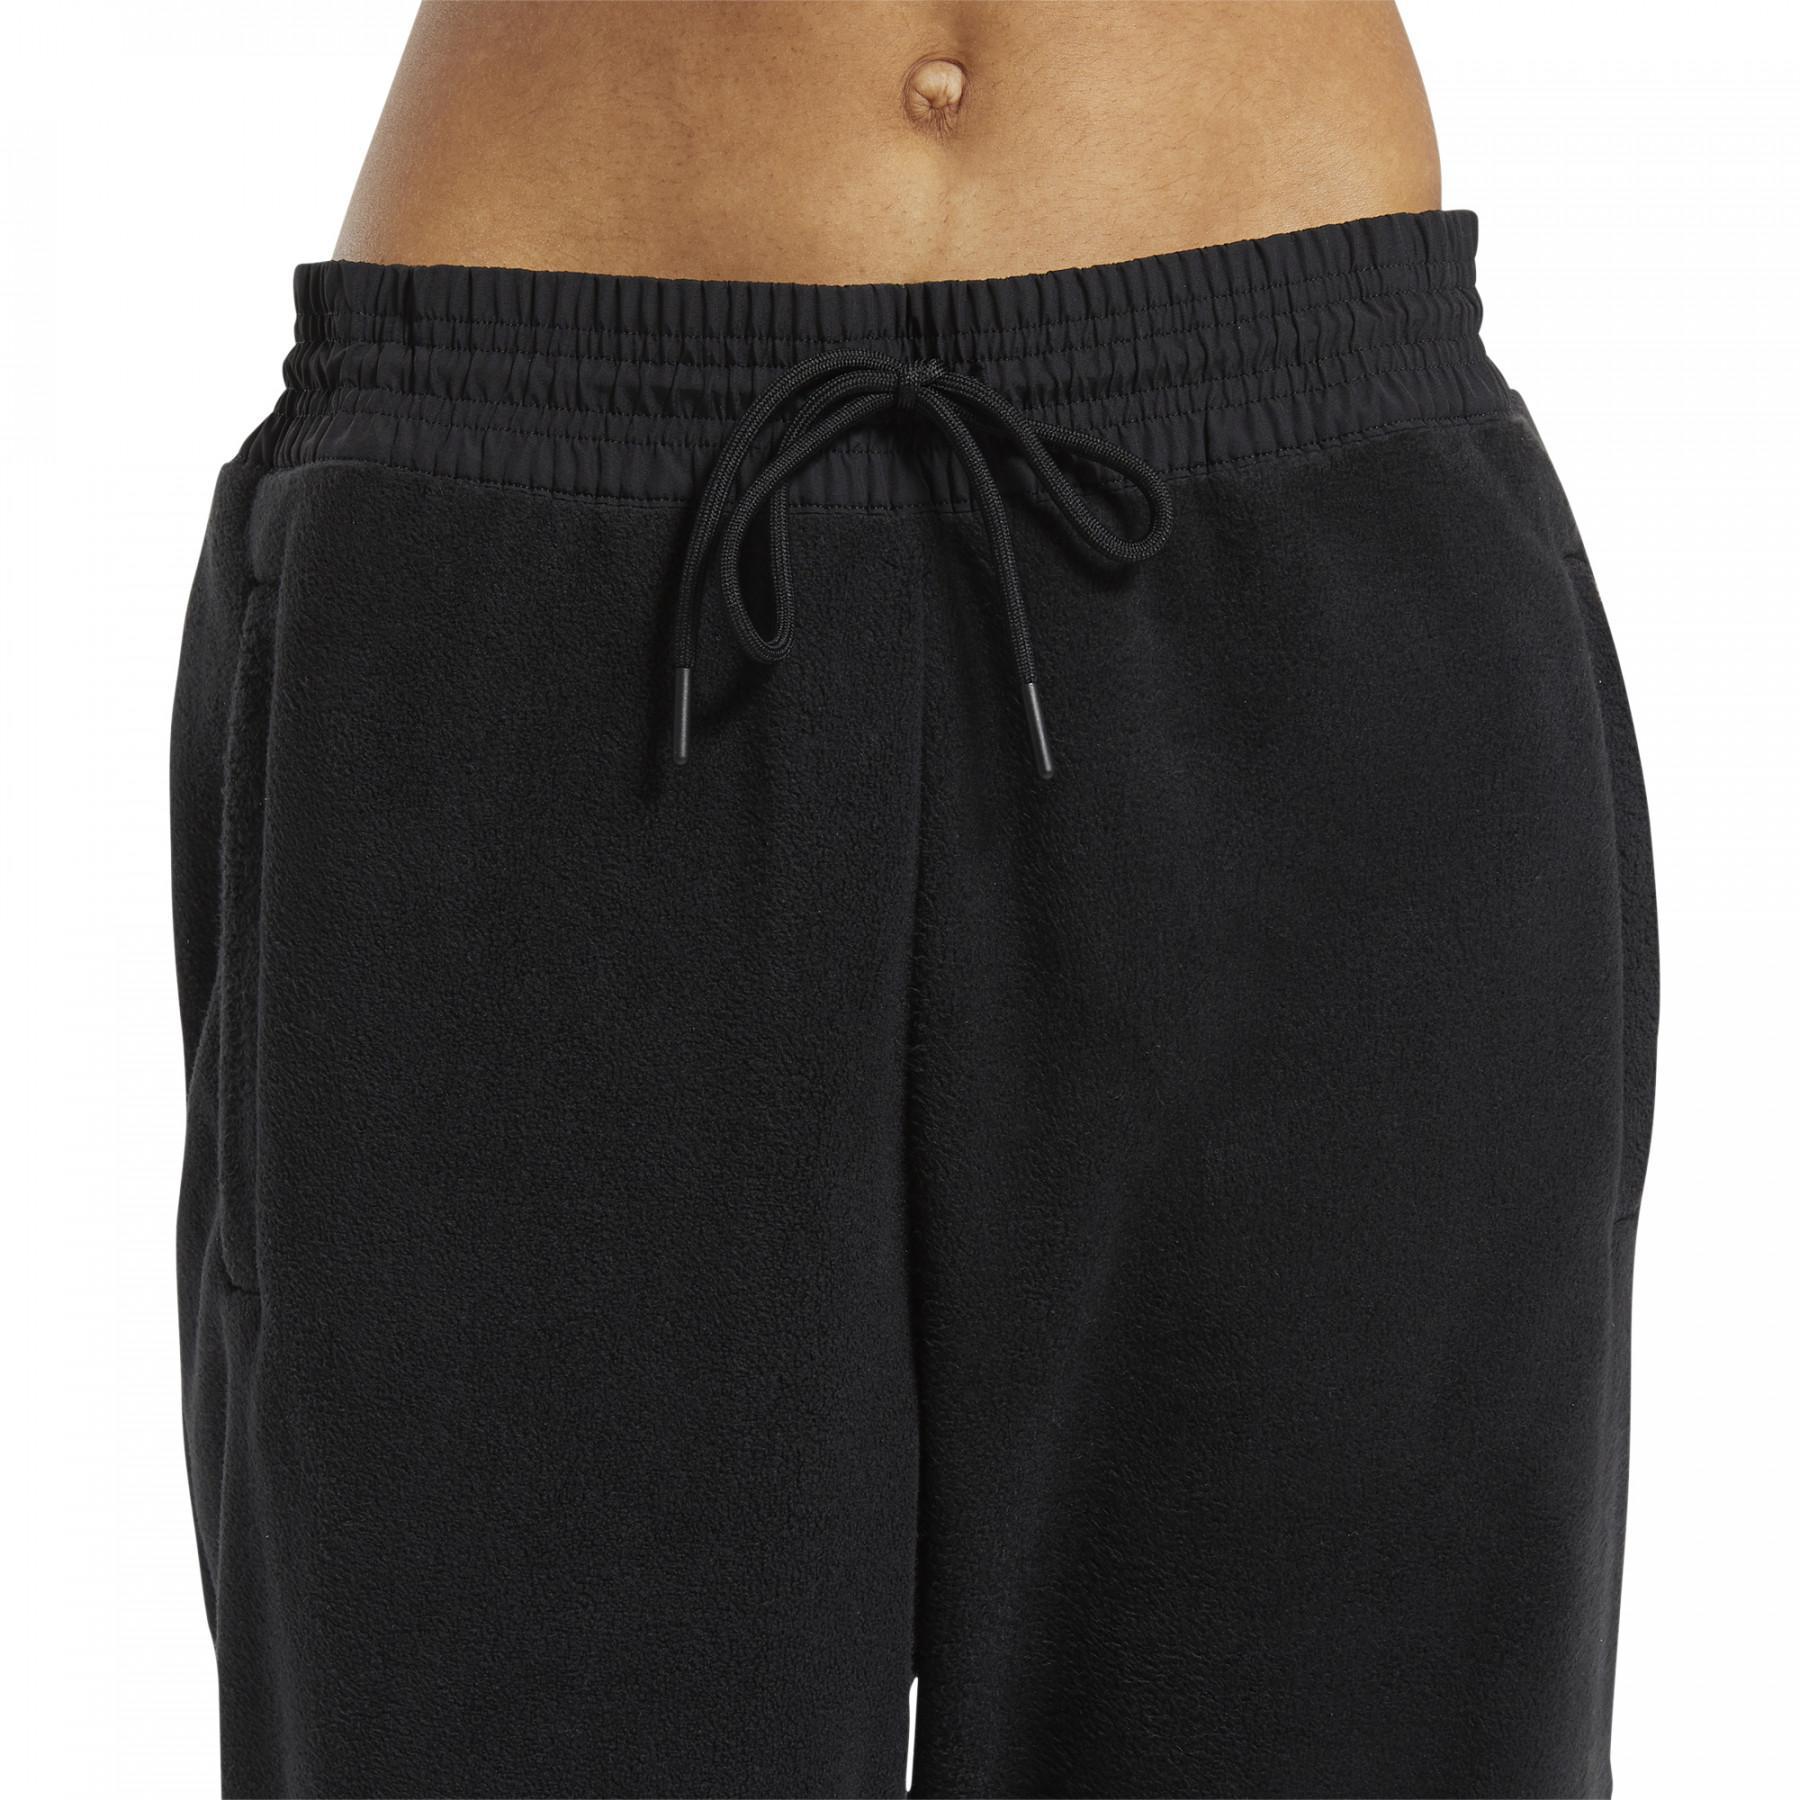 Pantalones mujer Reebok MYT Warm-up